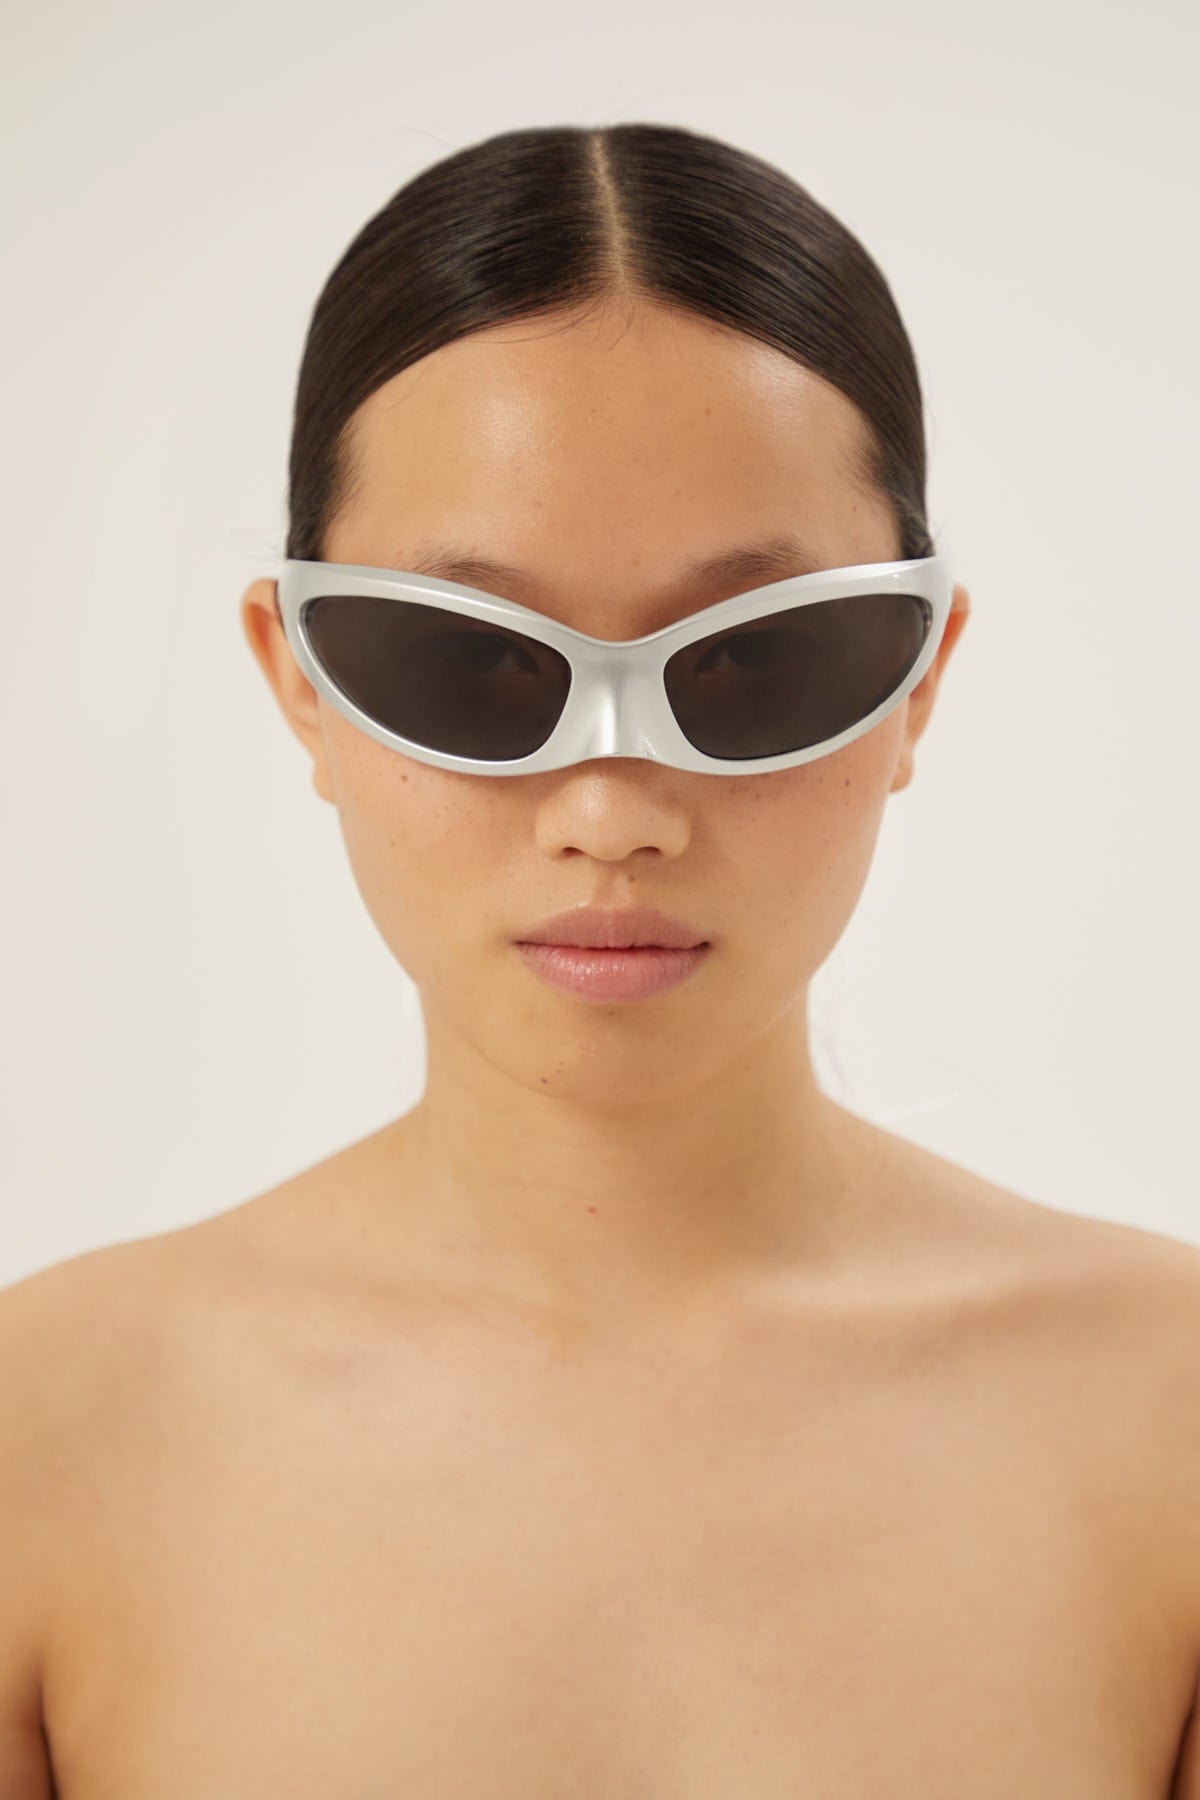 Balenciaga Skin Cat sunglasses in silver - Eyewear Club